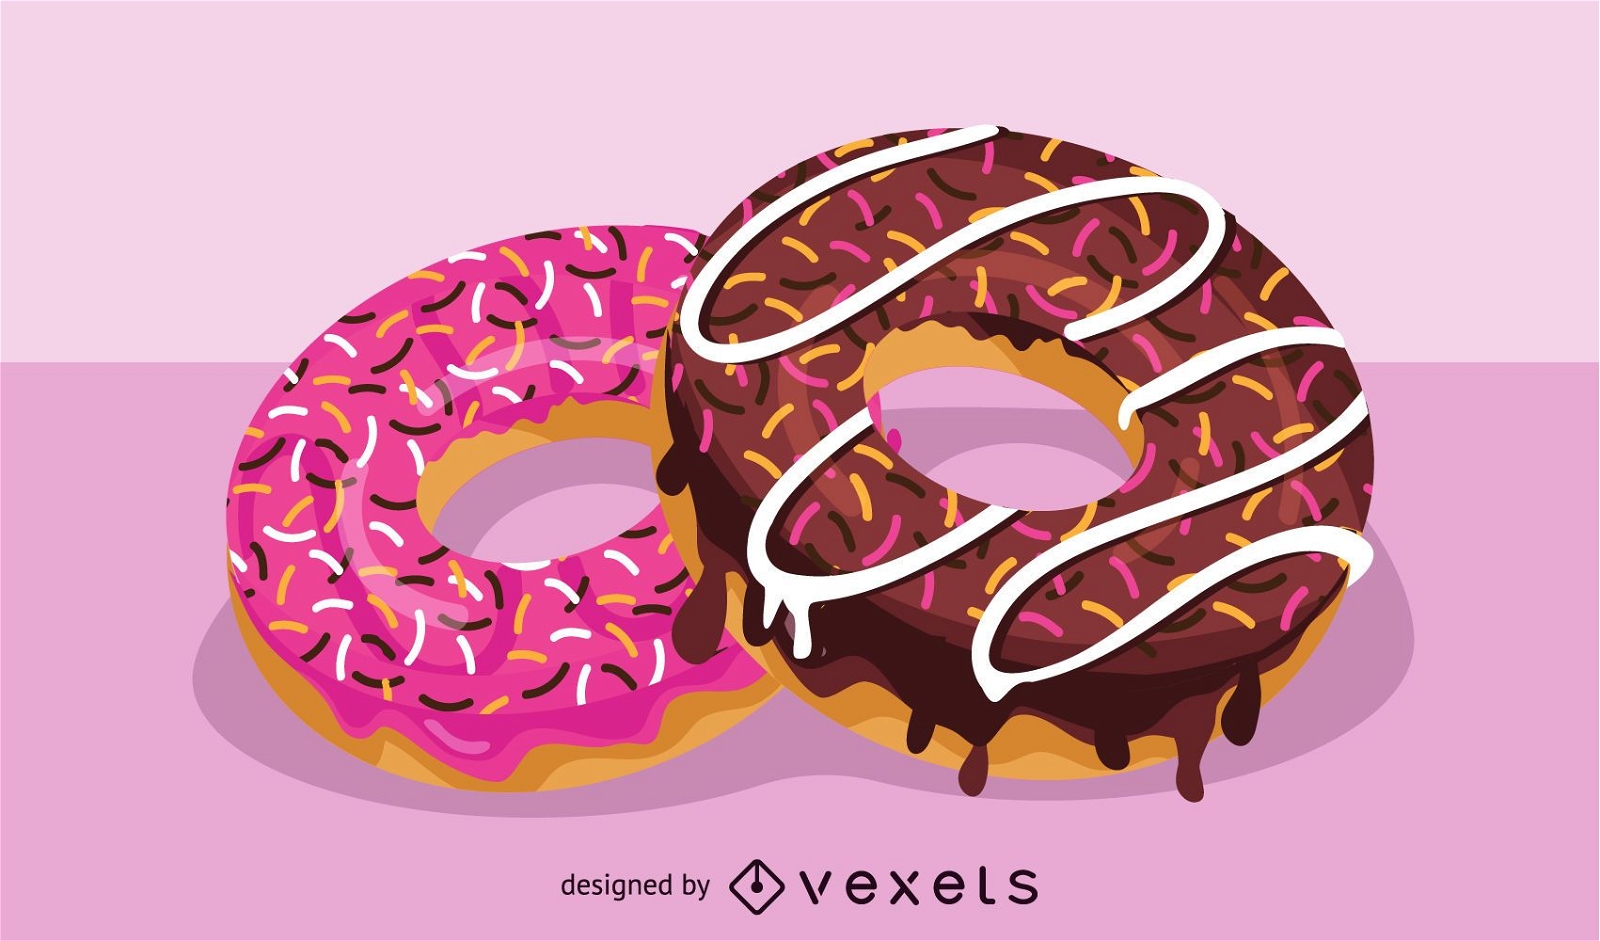 K?stliche Donut-Illustration